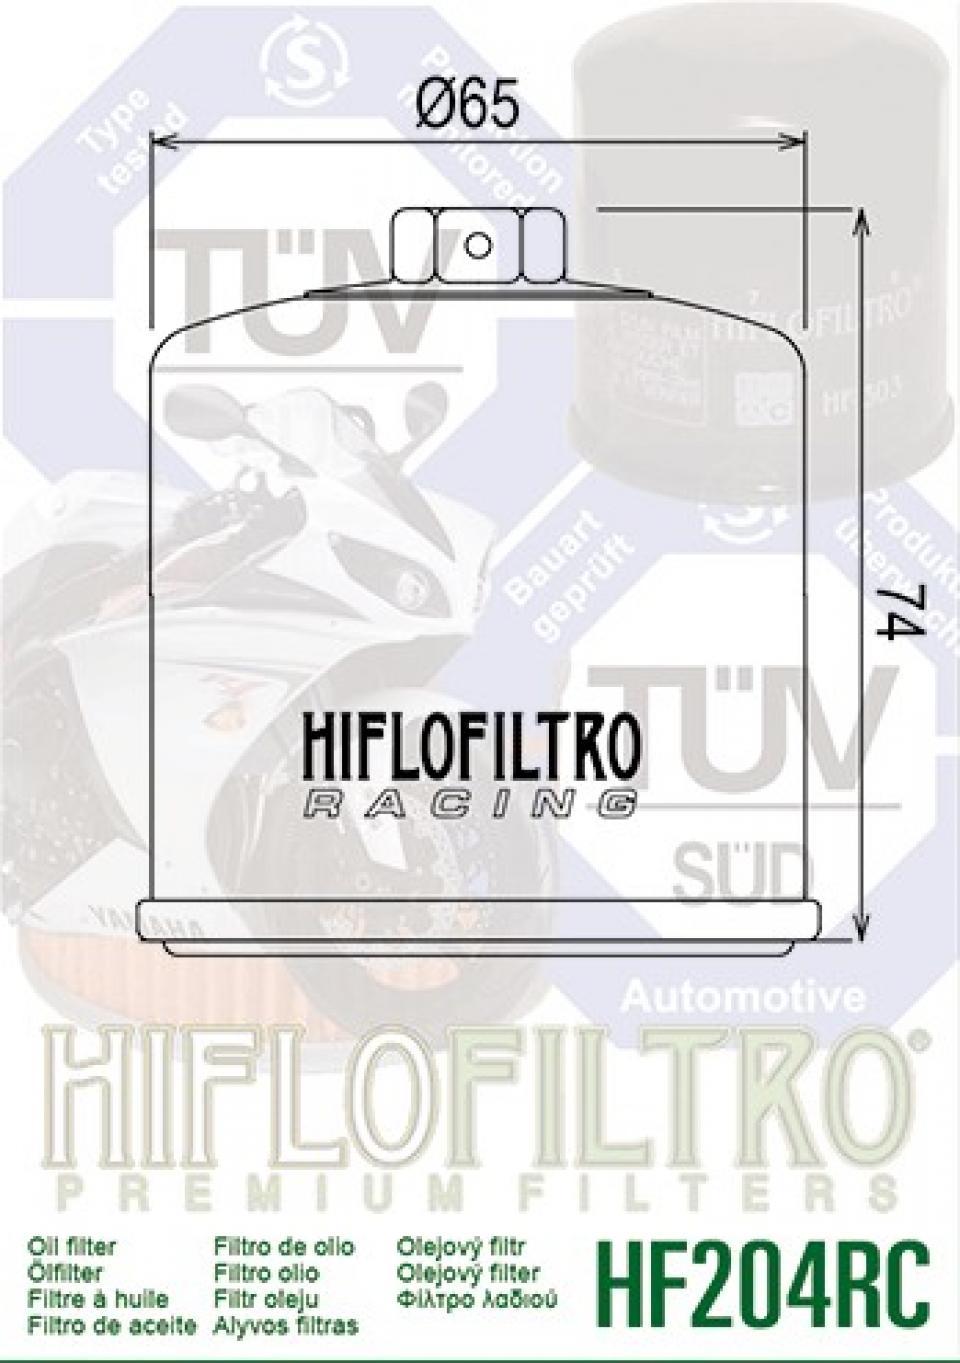 Filtre à huile Hiflofiltro pour Moto Triumph 600 Speed four 2005 à 2006 Neuf